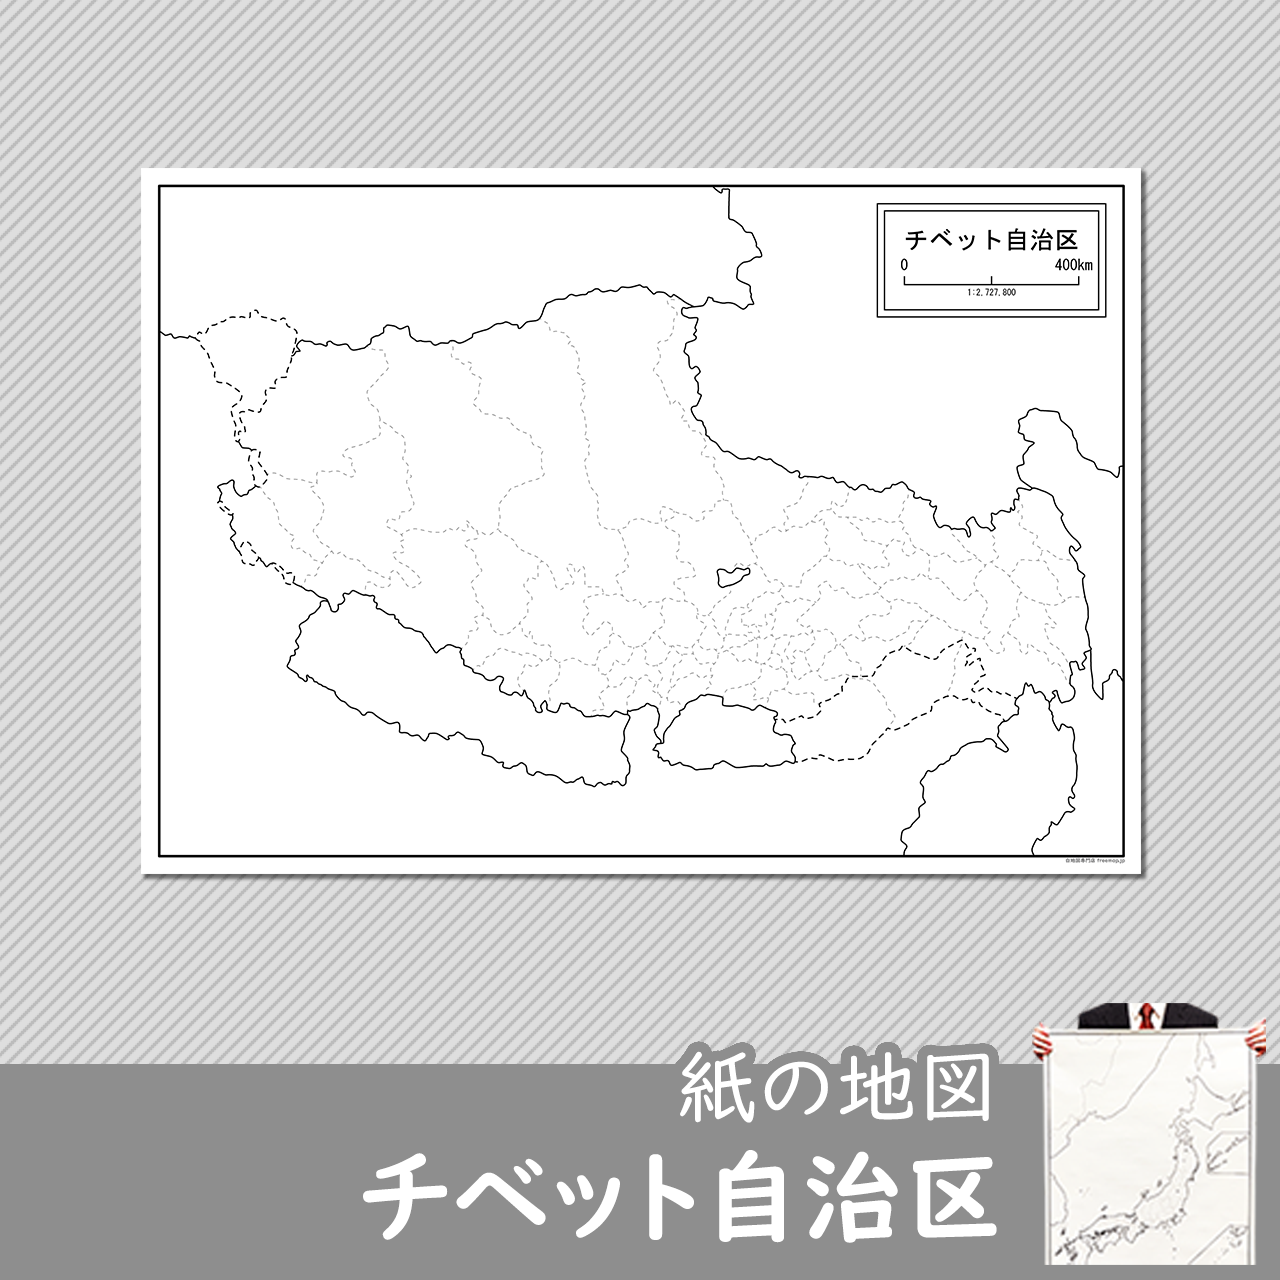 チベット自治区の紙の白地図のサムネイル